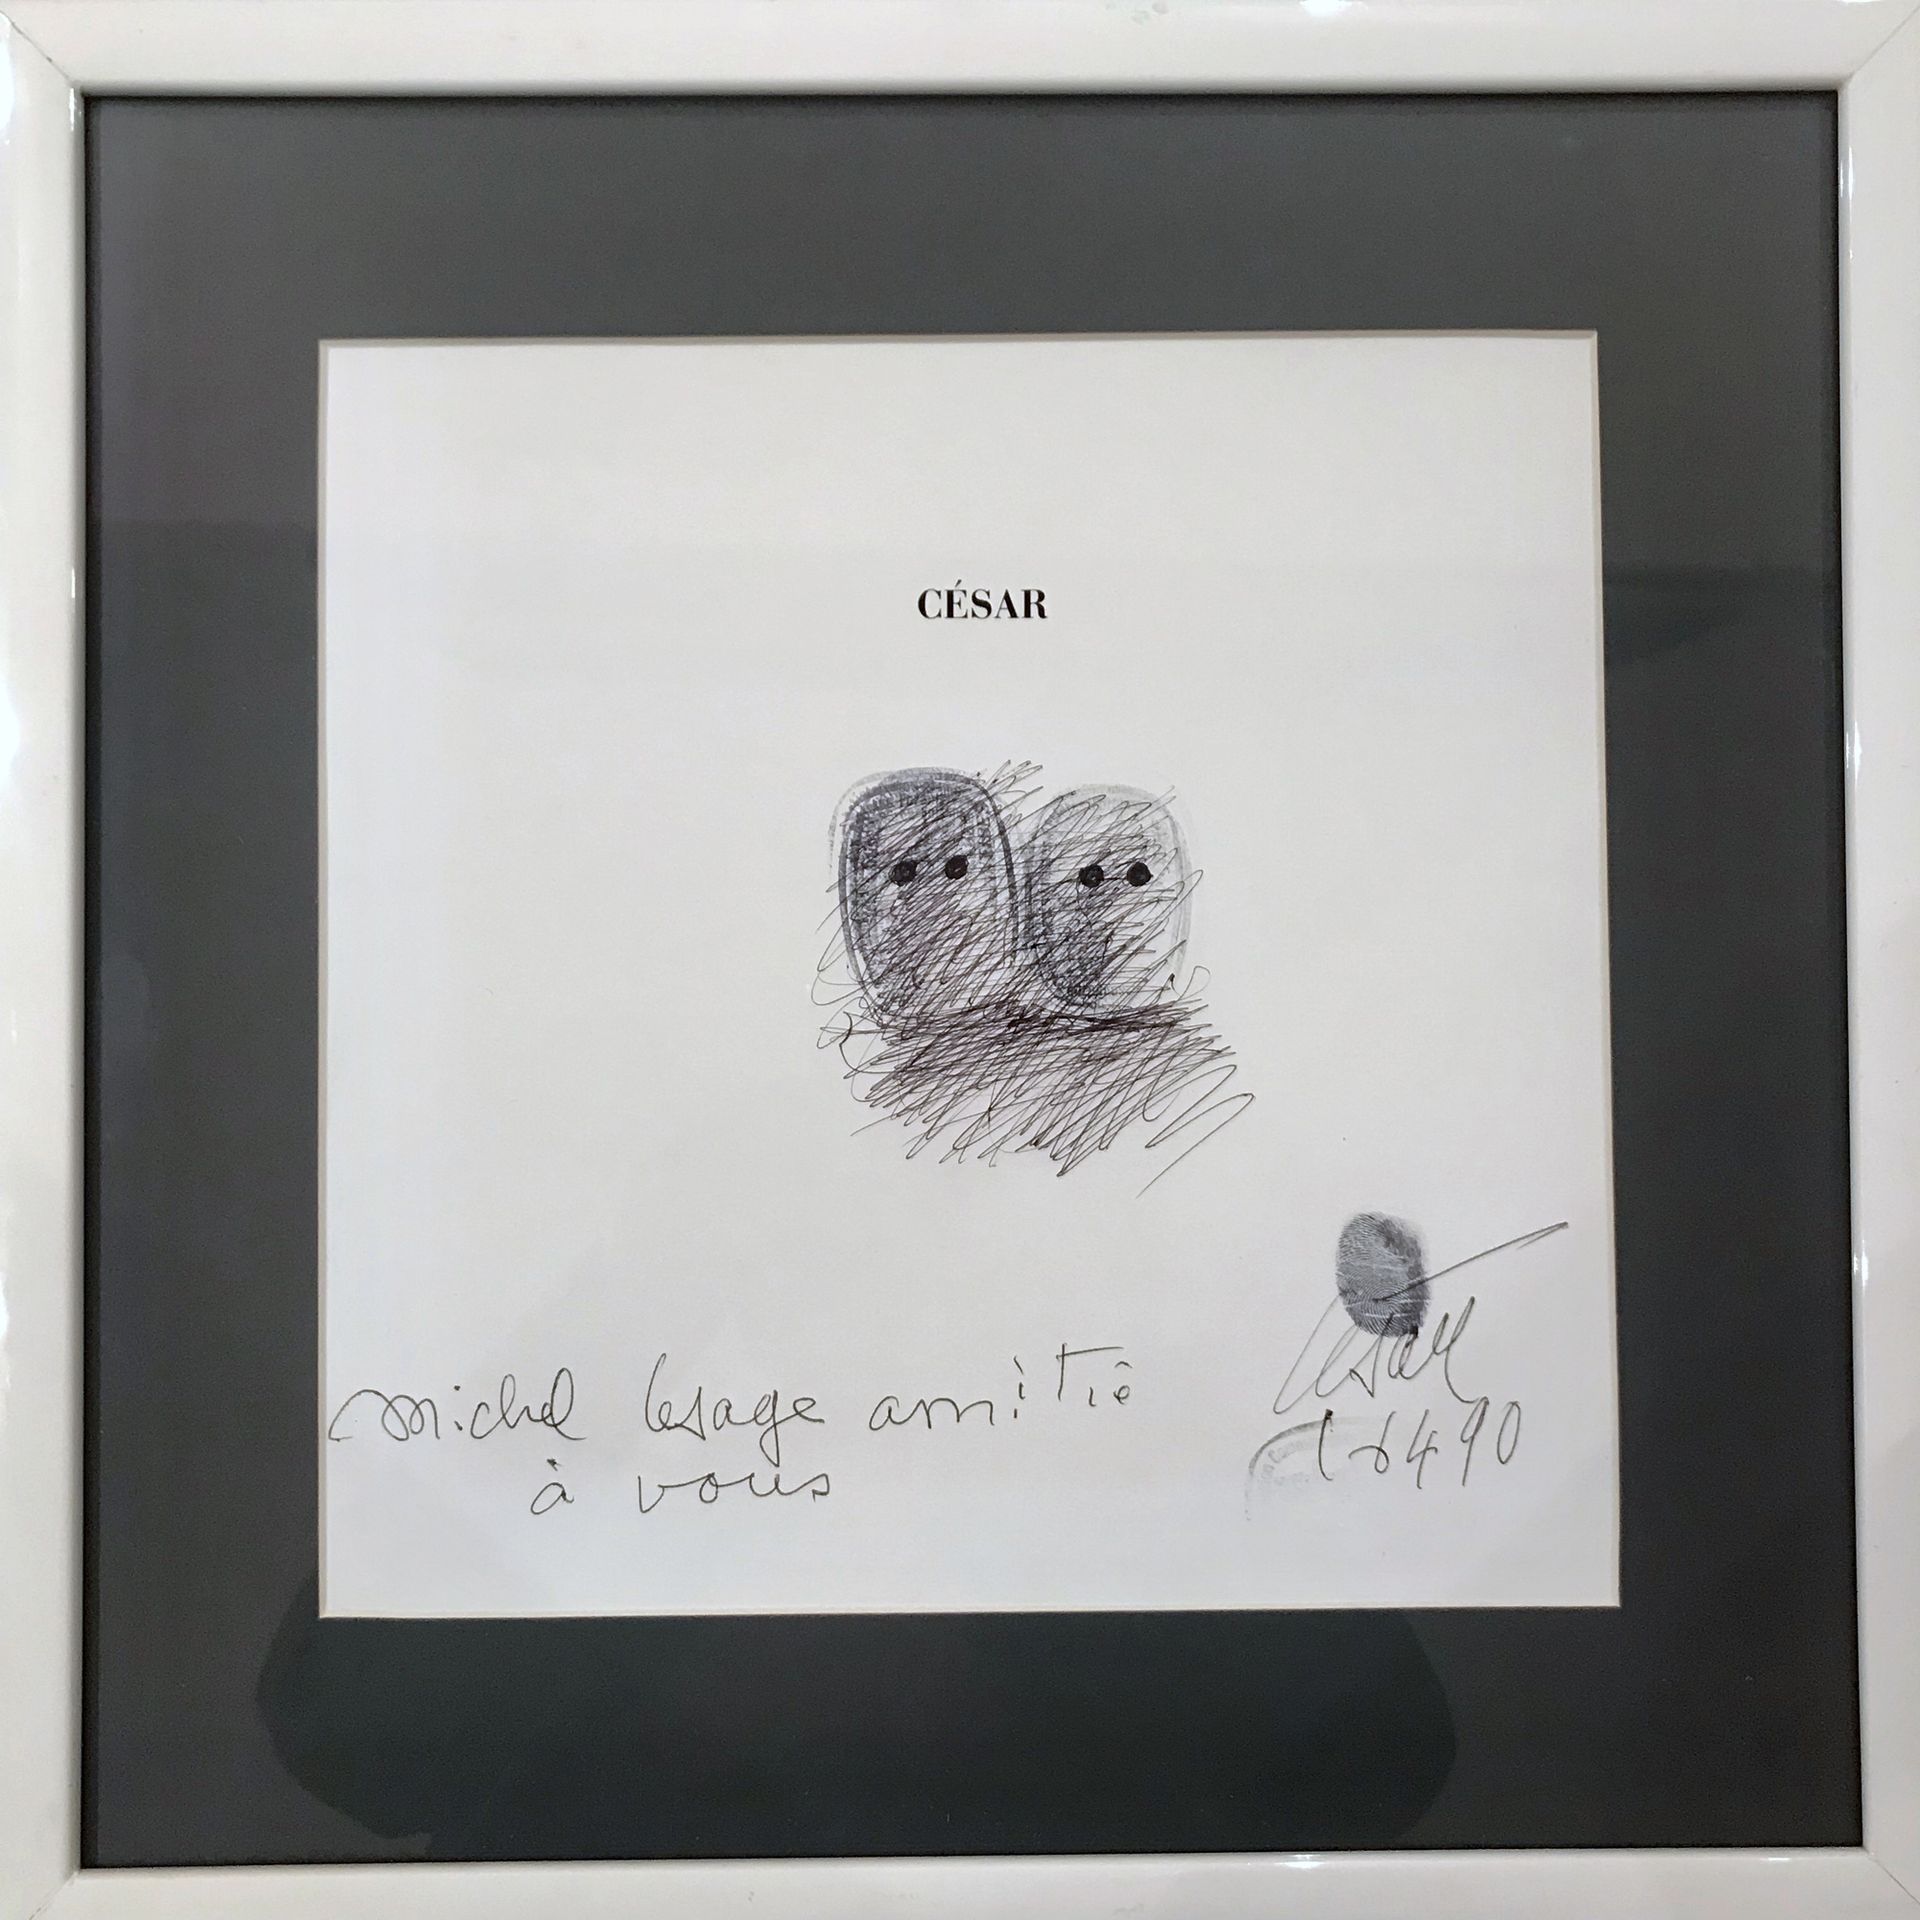 César (1921-1998) 两张脸，1990年
展览目录扉页上的水墨画和印章
签名、献词和日期
有他的拇指印
27 x 27 cm 展出中